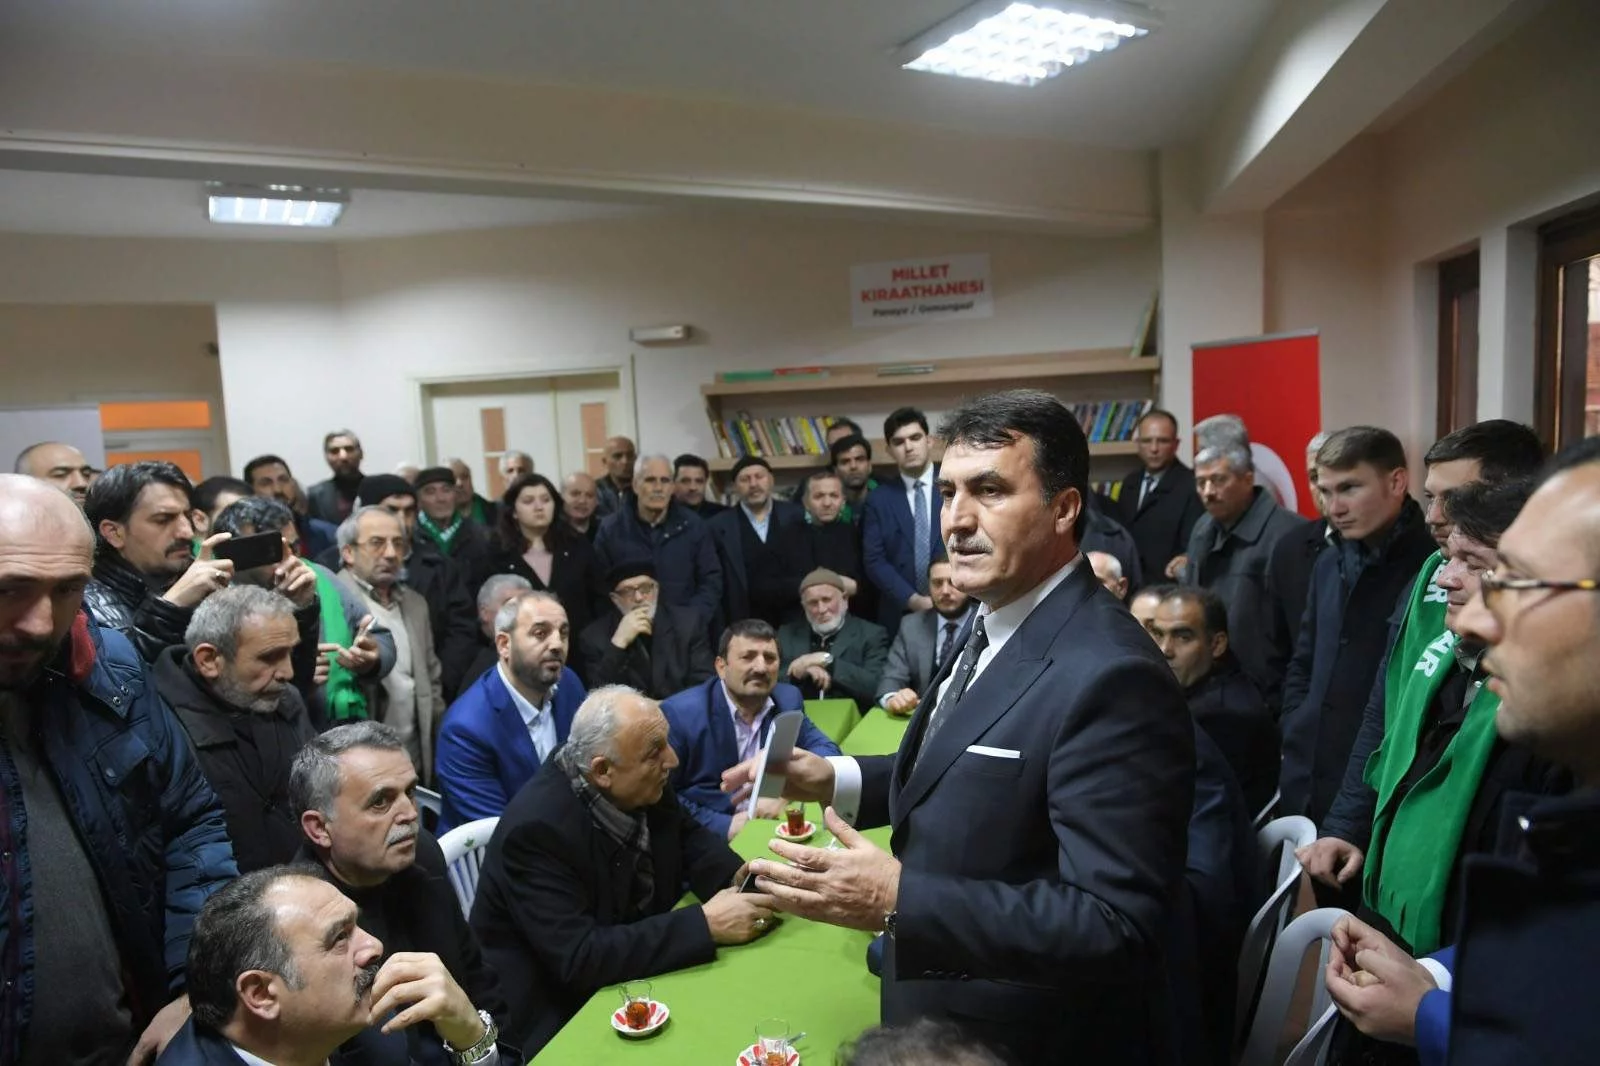 Osmangazi Belediye Başkanı Dündar: "Yapamayacağım işin sözünü vermem”